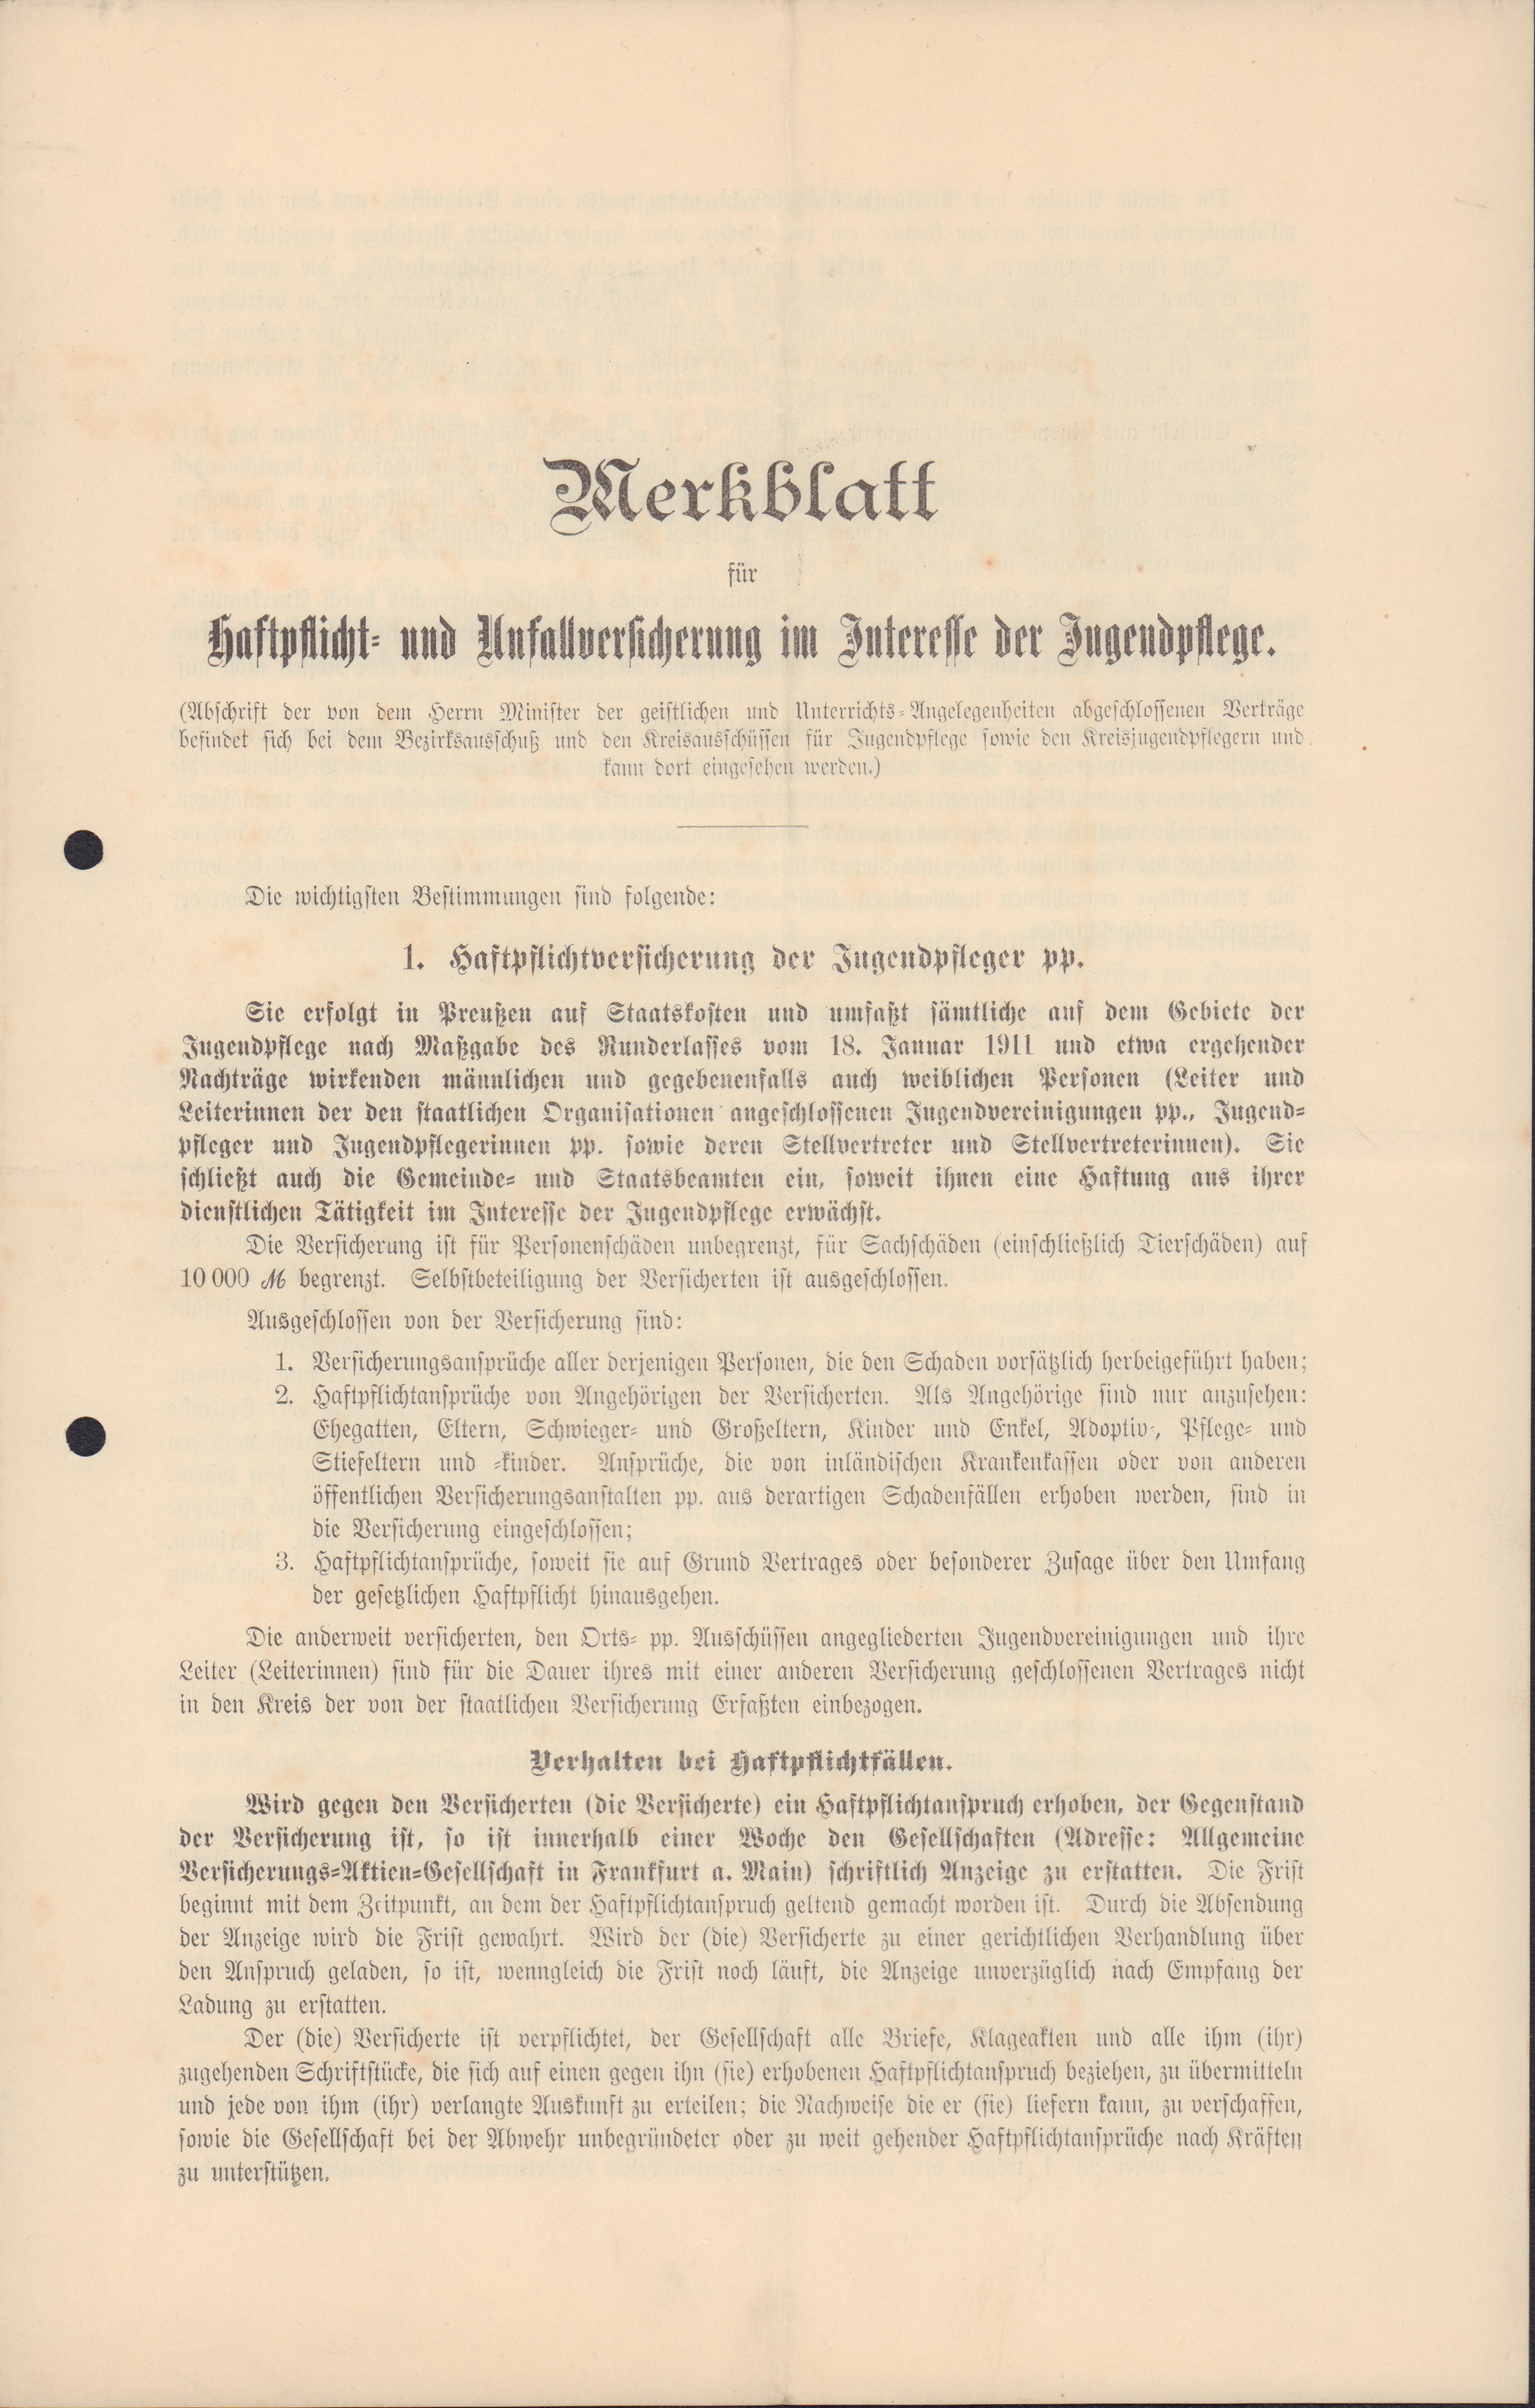 Merkblatt für Haftpflicht- und Unfallversicherung im Interesse der Jugendpflege (Heimatmuseum und -Archiv Bad Bodendorf CC BY-NC-SA)